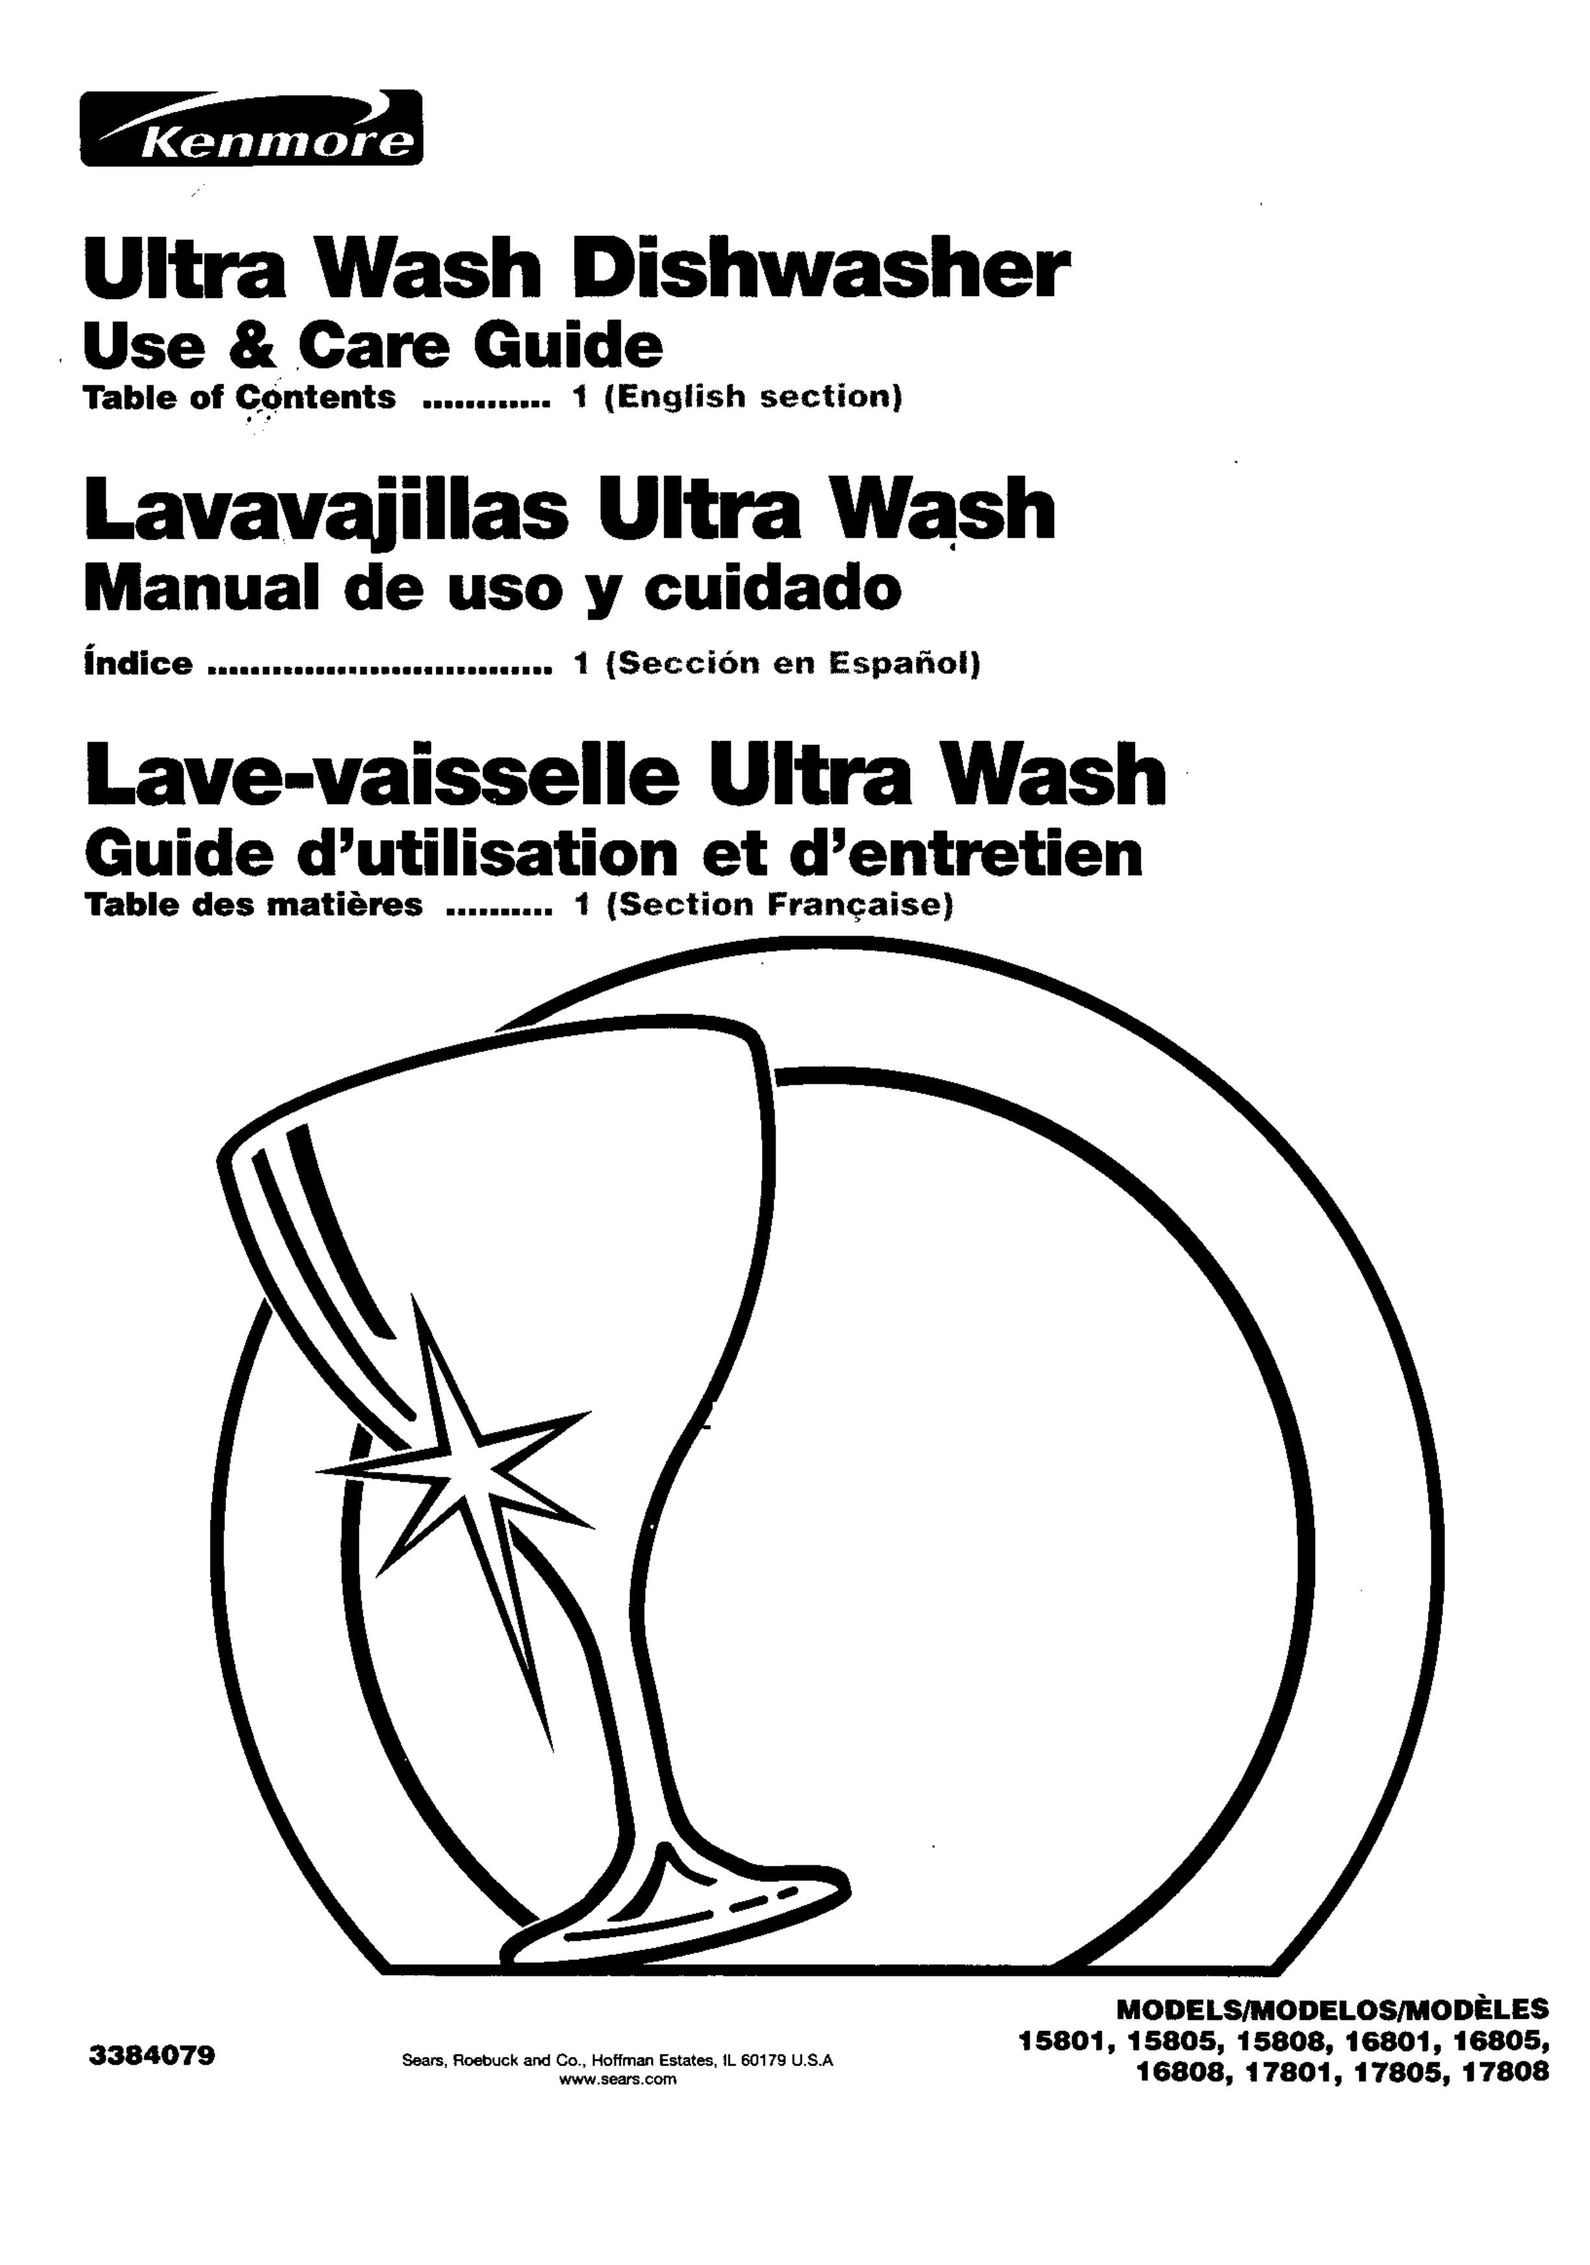 Kenmore 17808 Dishwasher User Manual